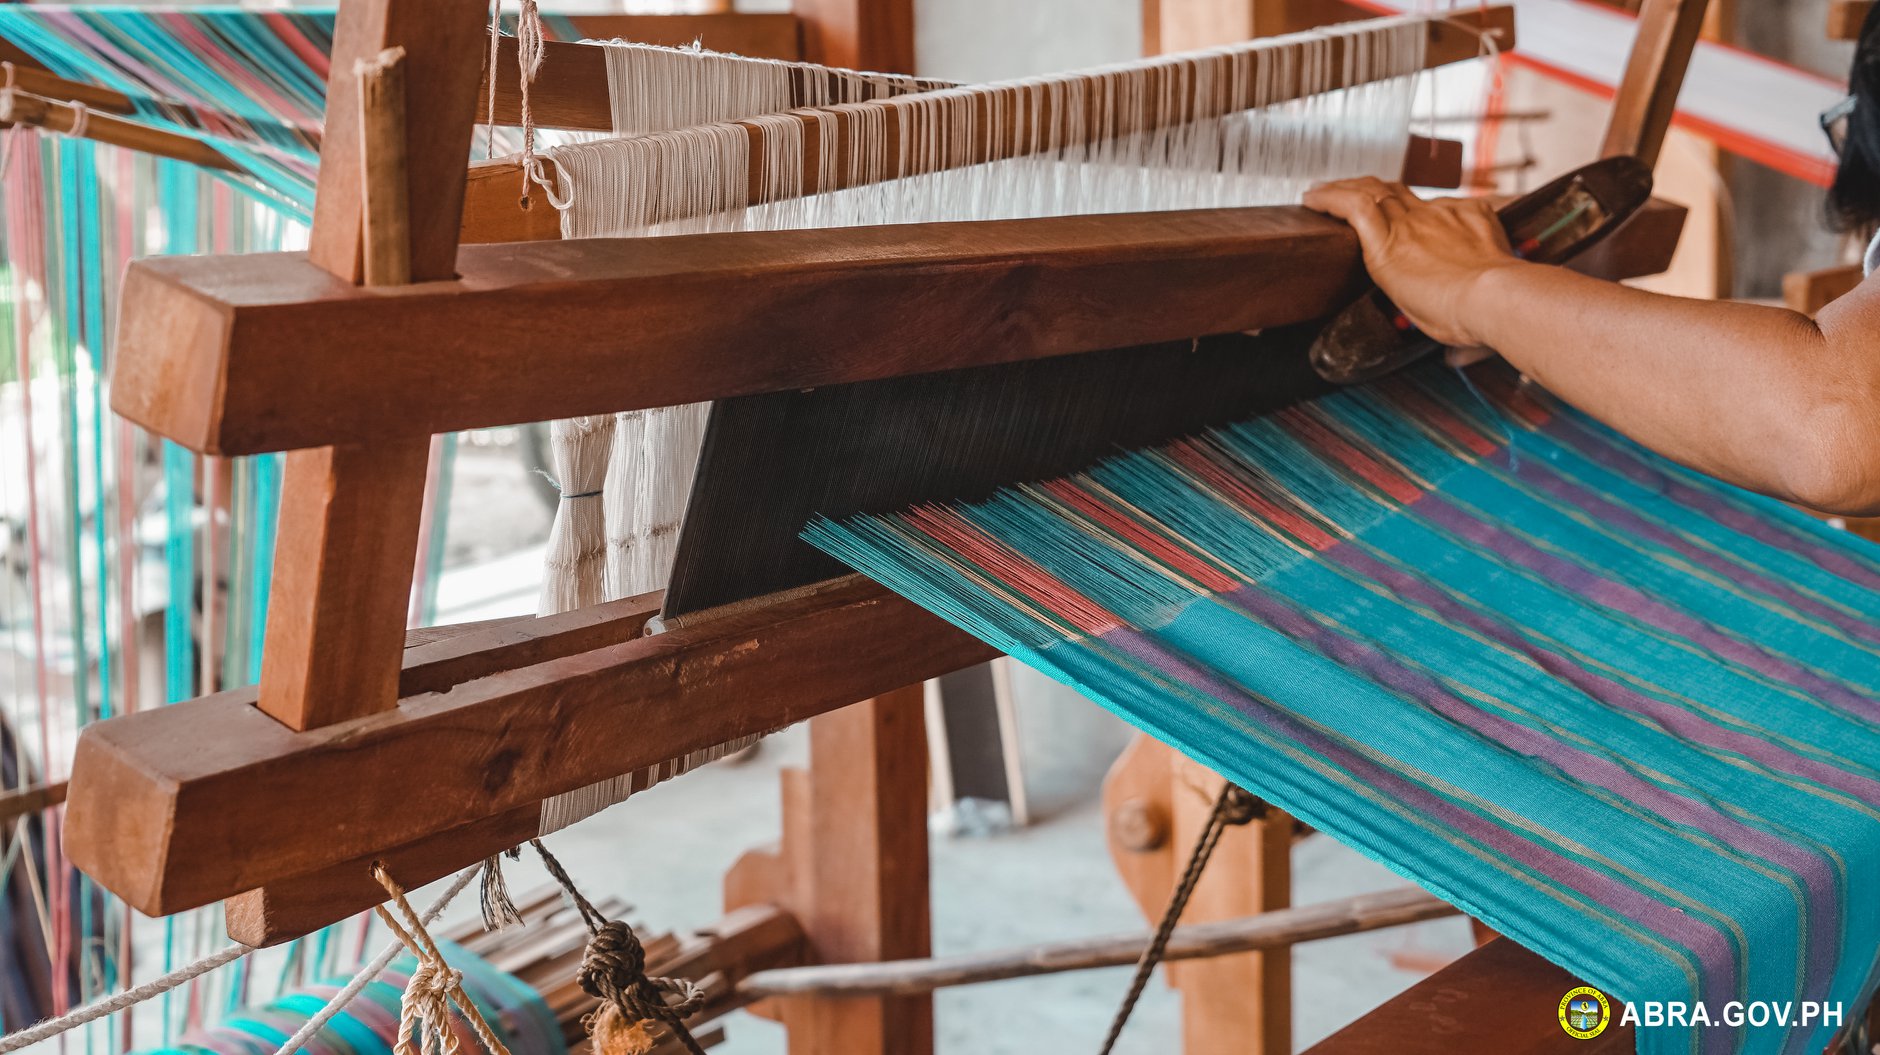 Photo of Loom Weaving in La Paz